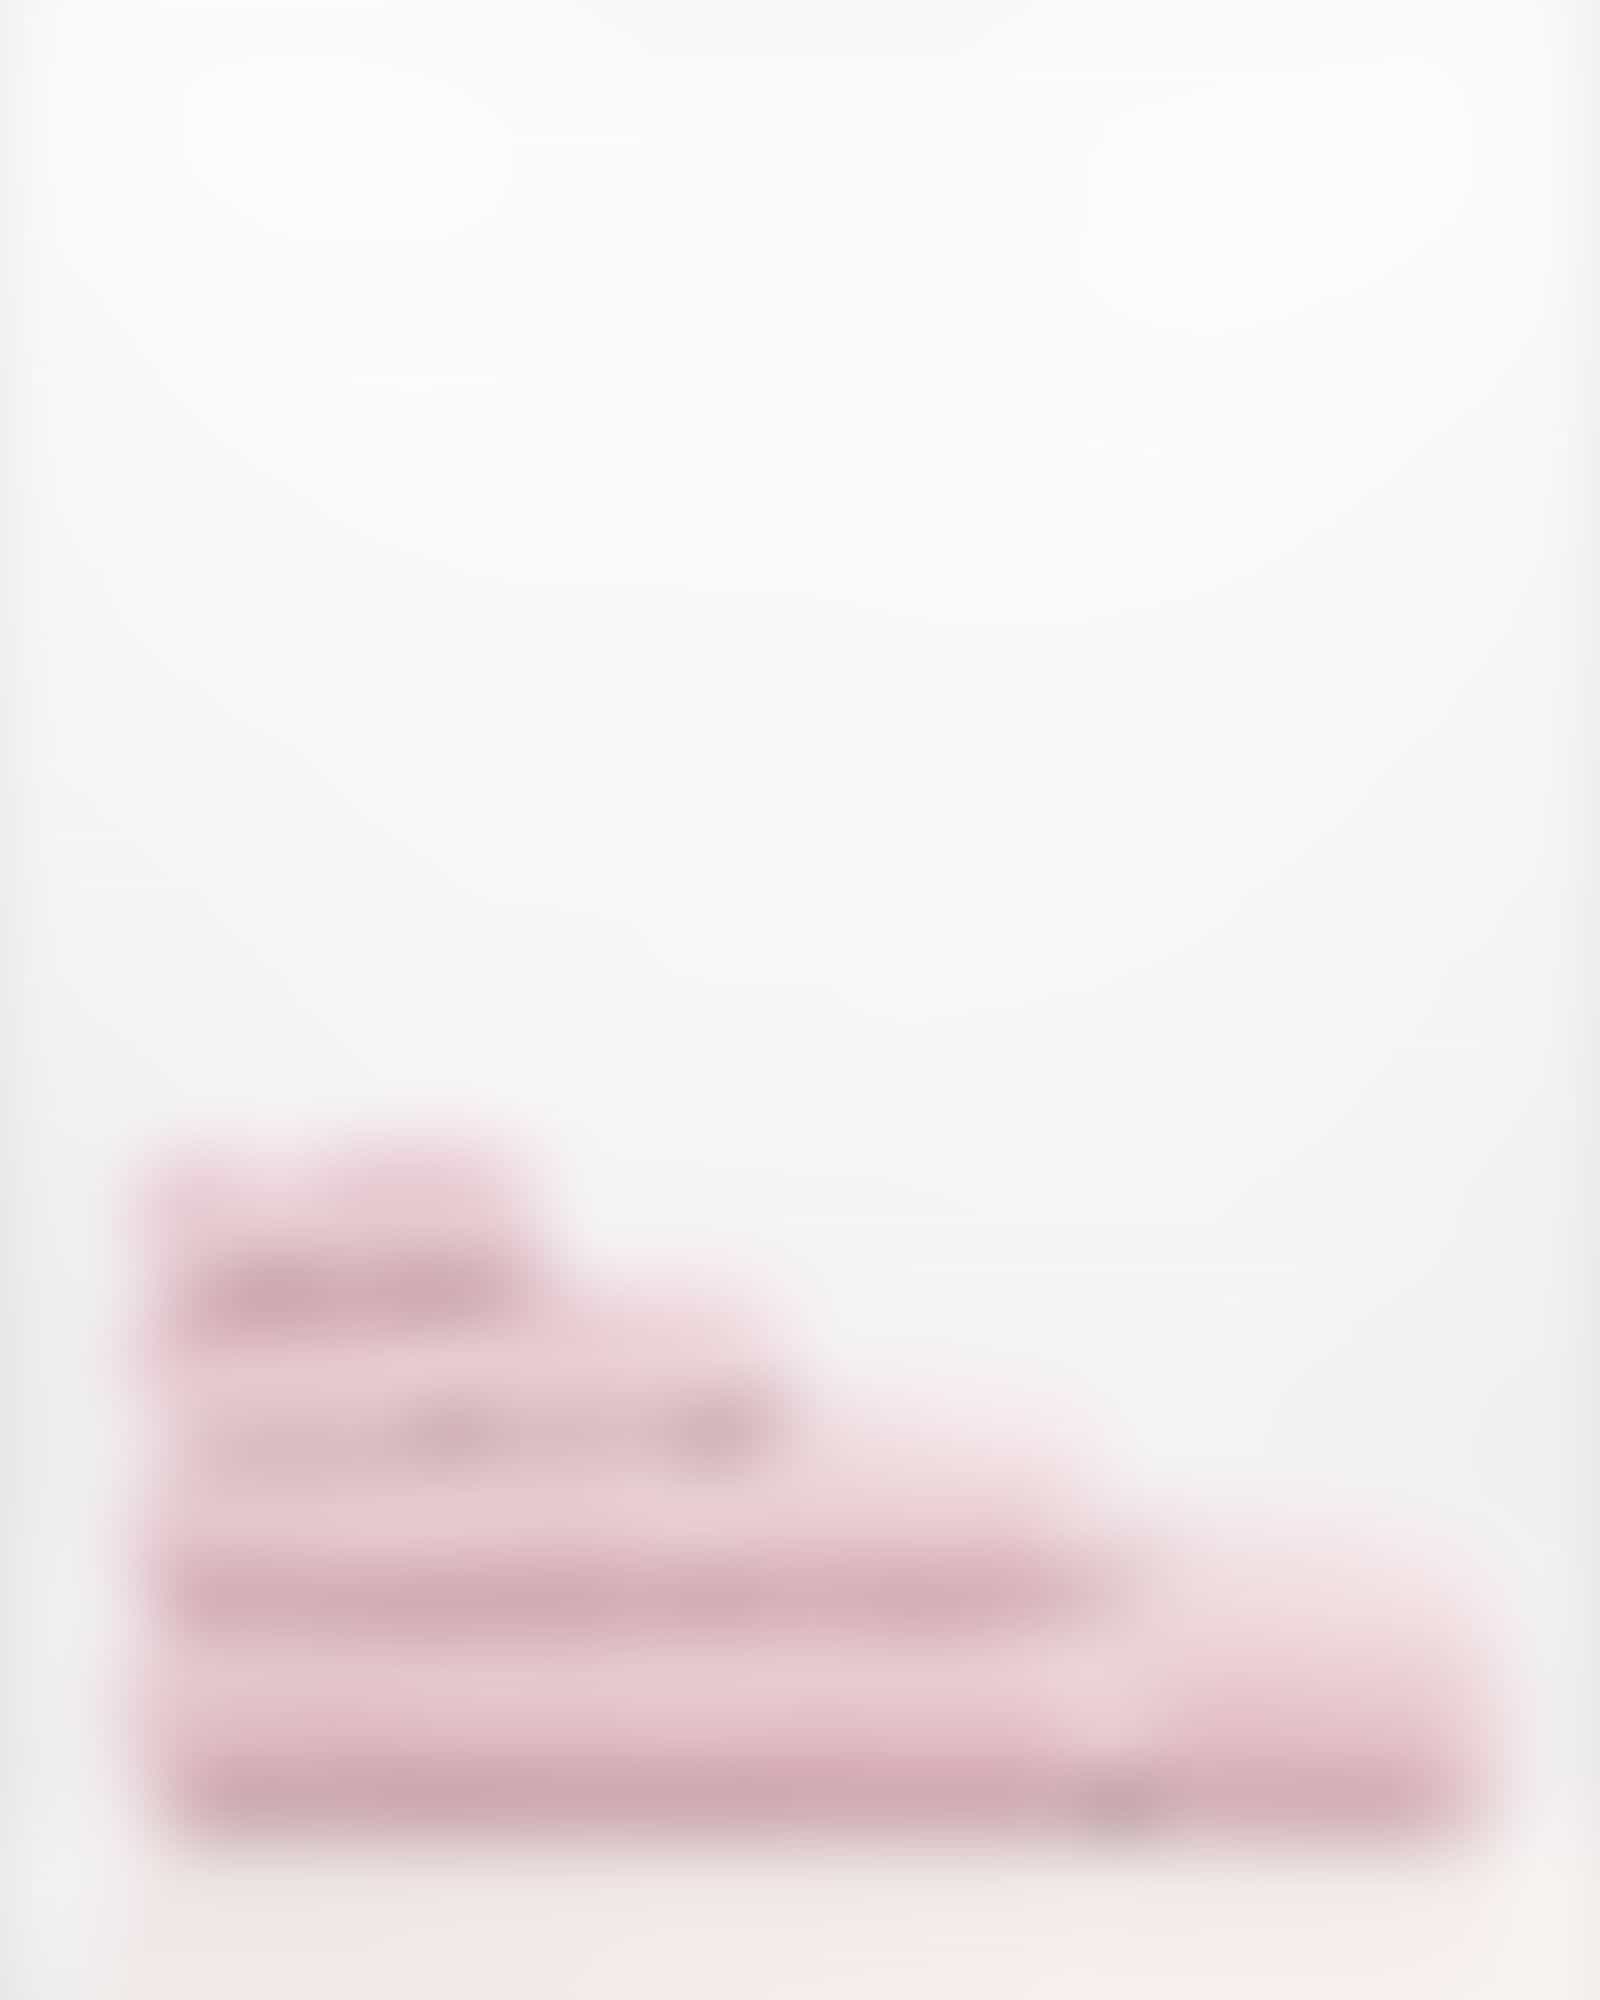 Vossen Handtücher Belief - Farbe: sea lavender - 3270 - Badetuch 100x150 cm